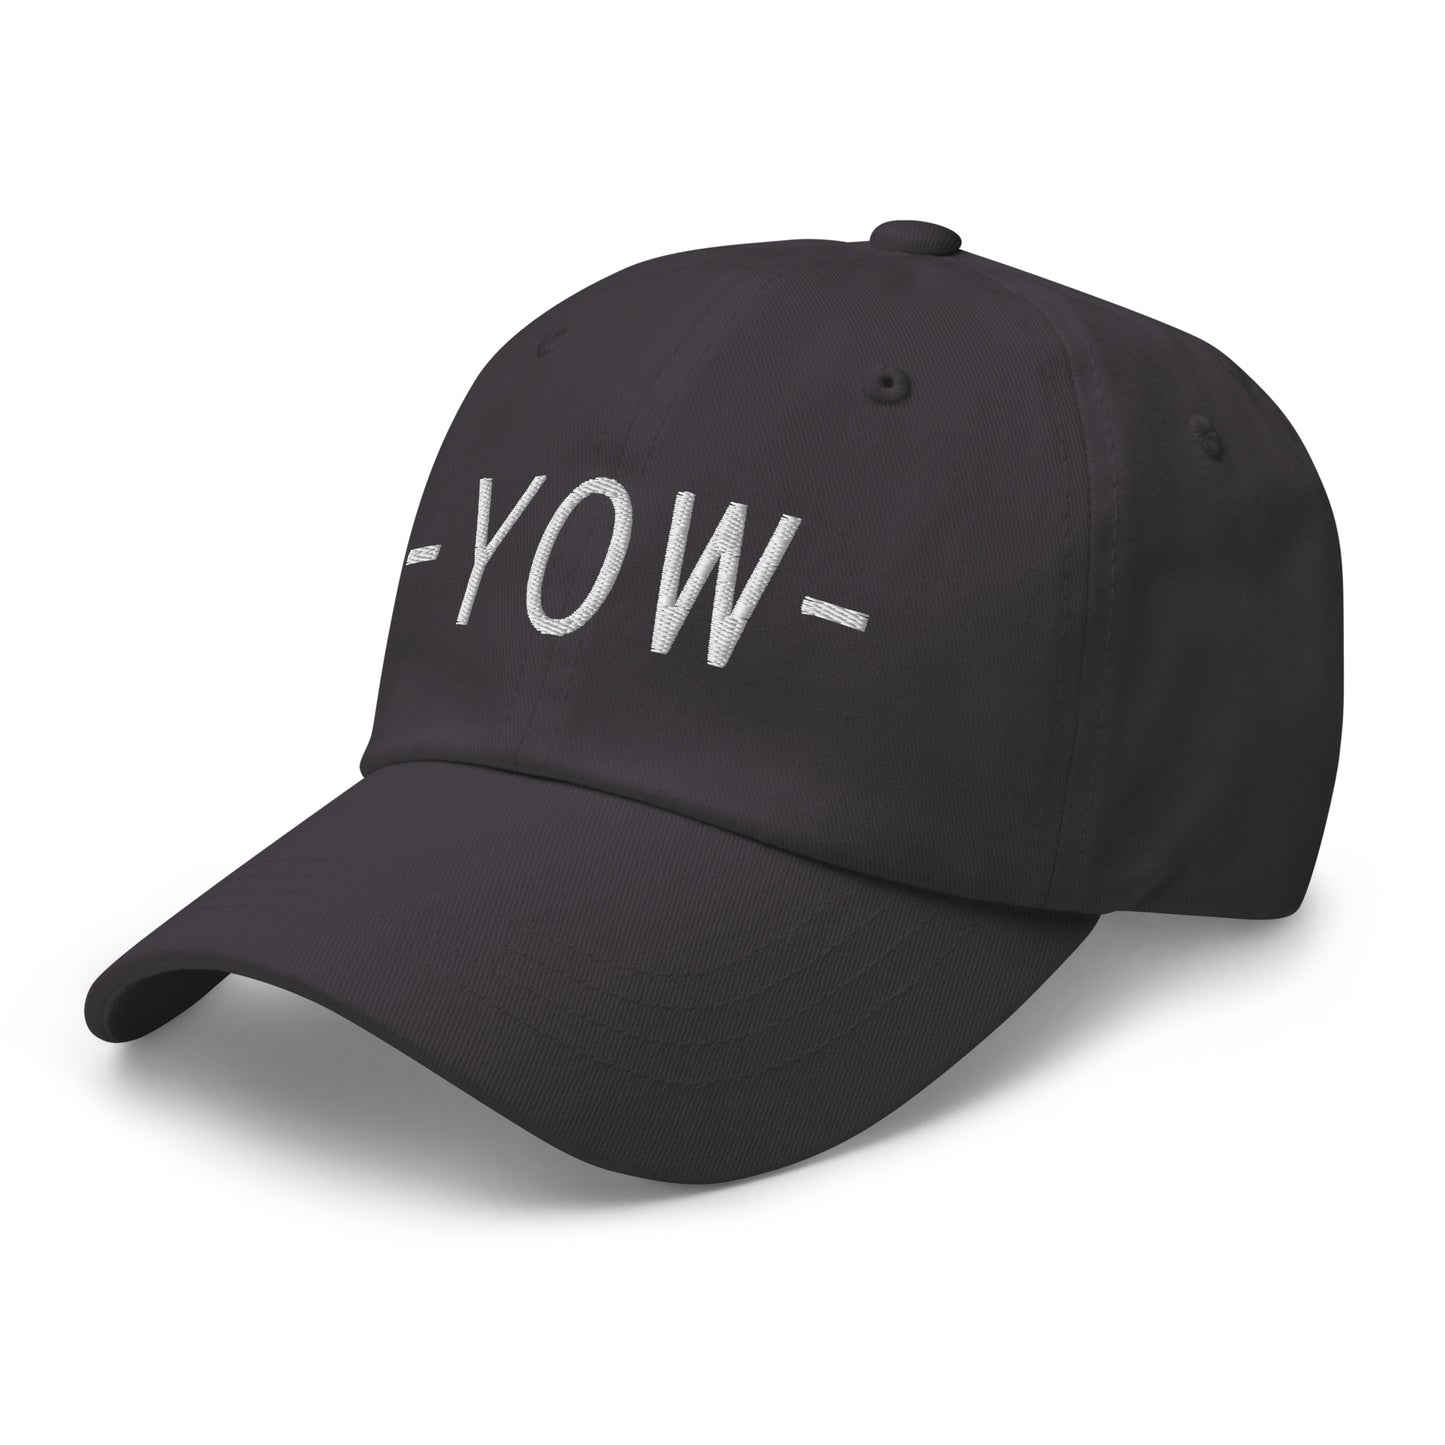 Souvenir Baseball Cap - White • YOW Ottawa • YHM Designs - Image 20